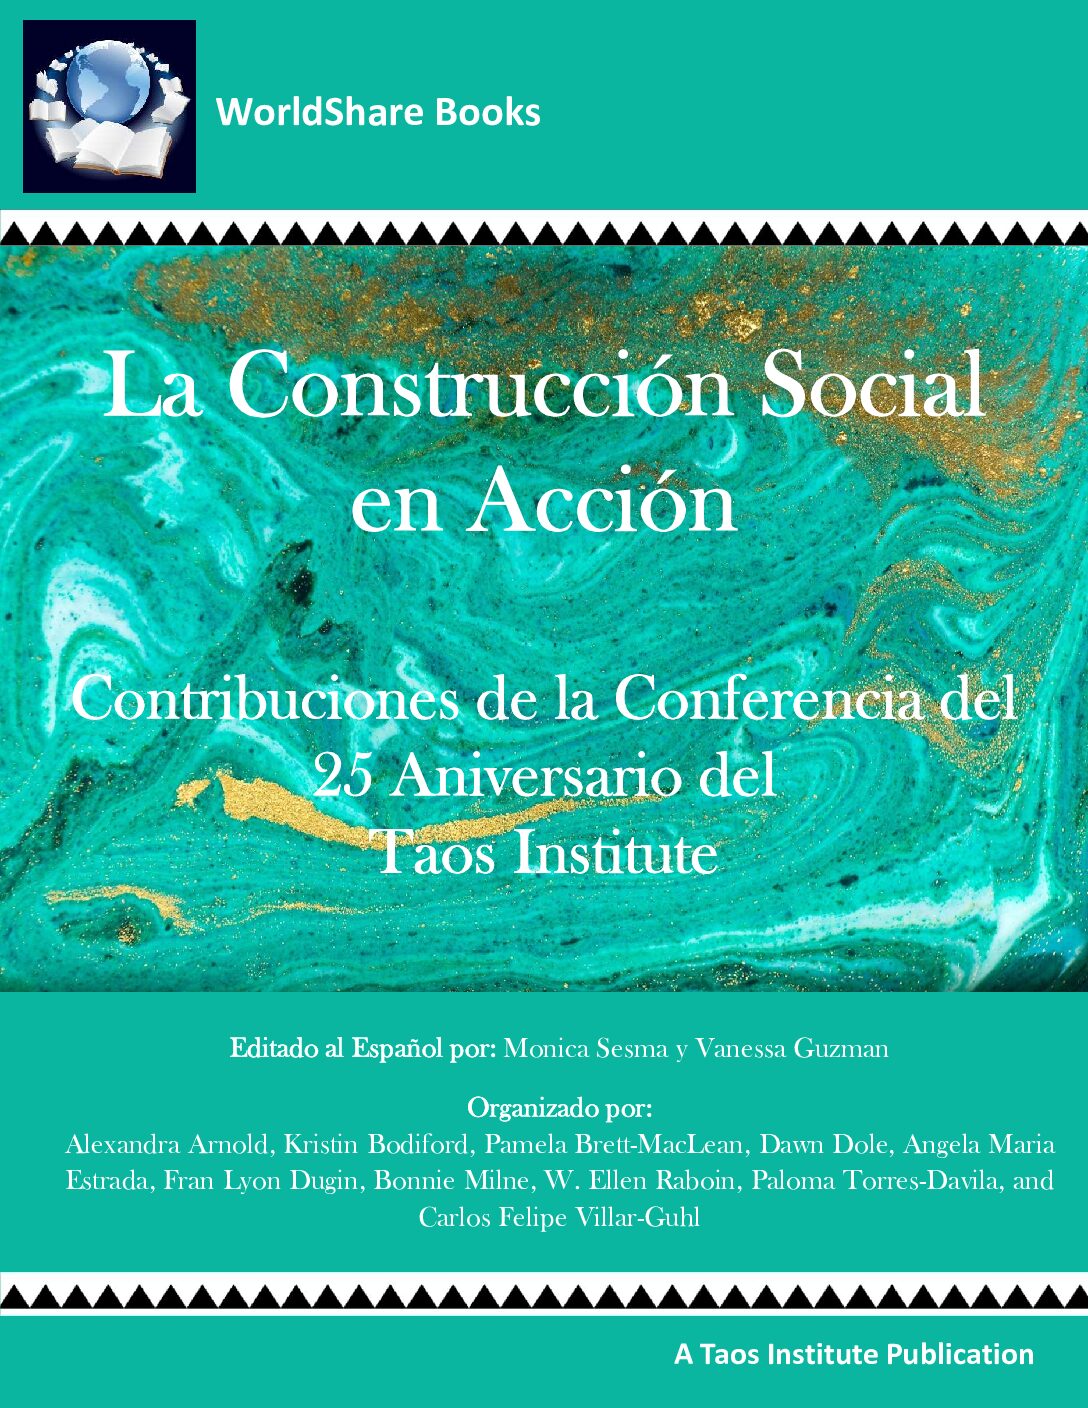 La Construcción Social en Acción - Contribuciones de la Conferencia del 25 Aniversario del Taos Institute